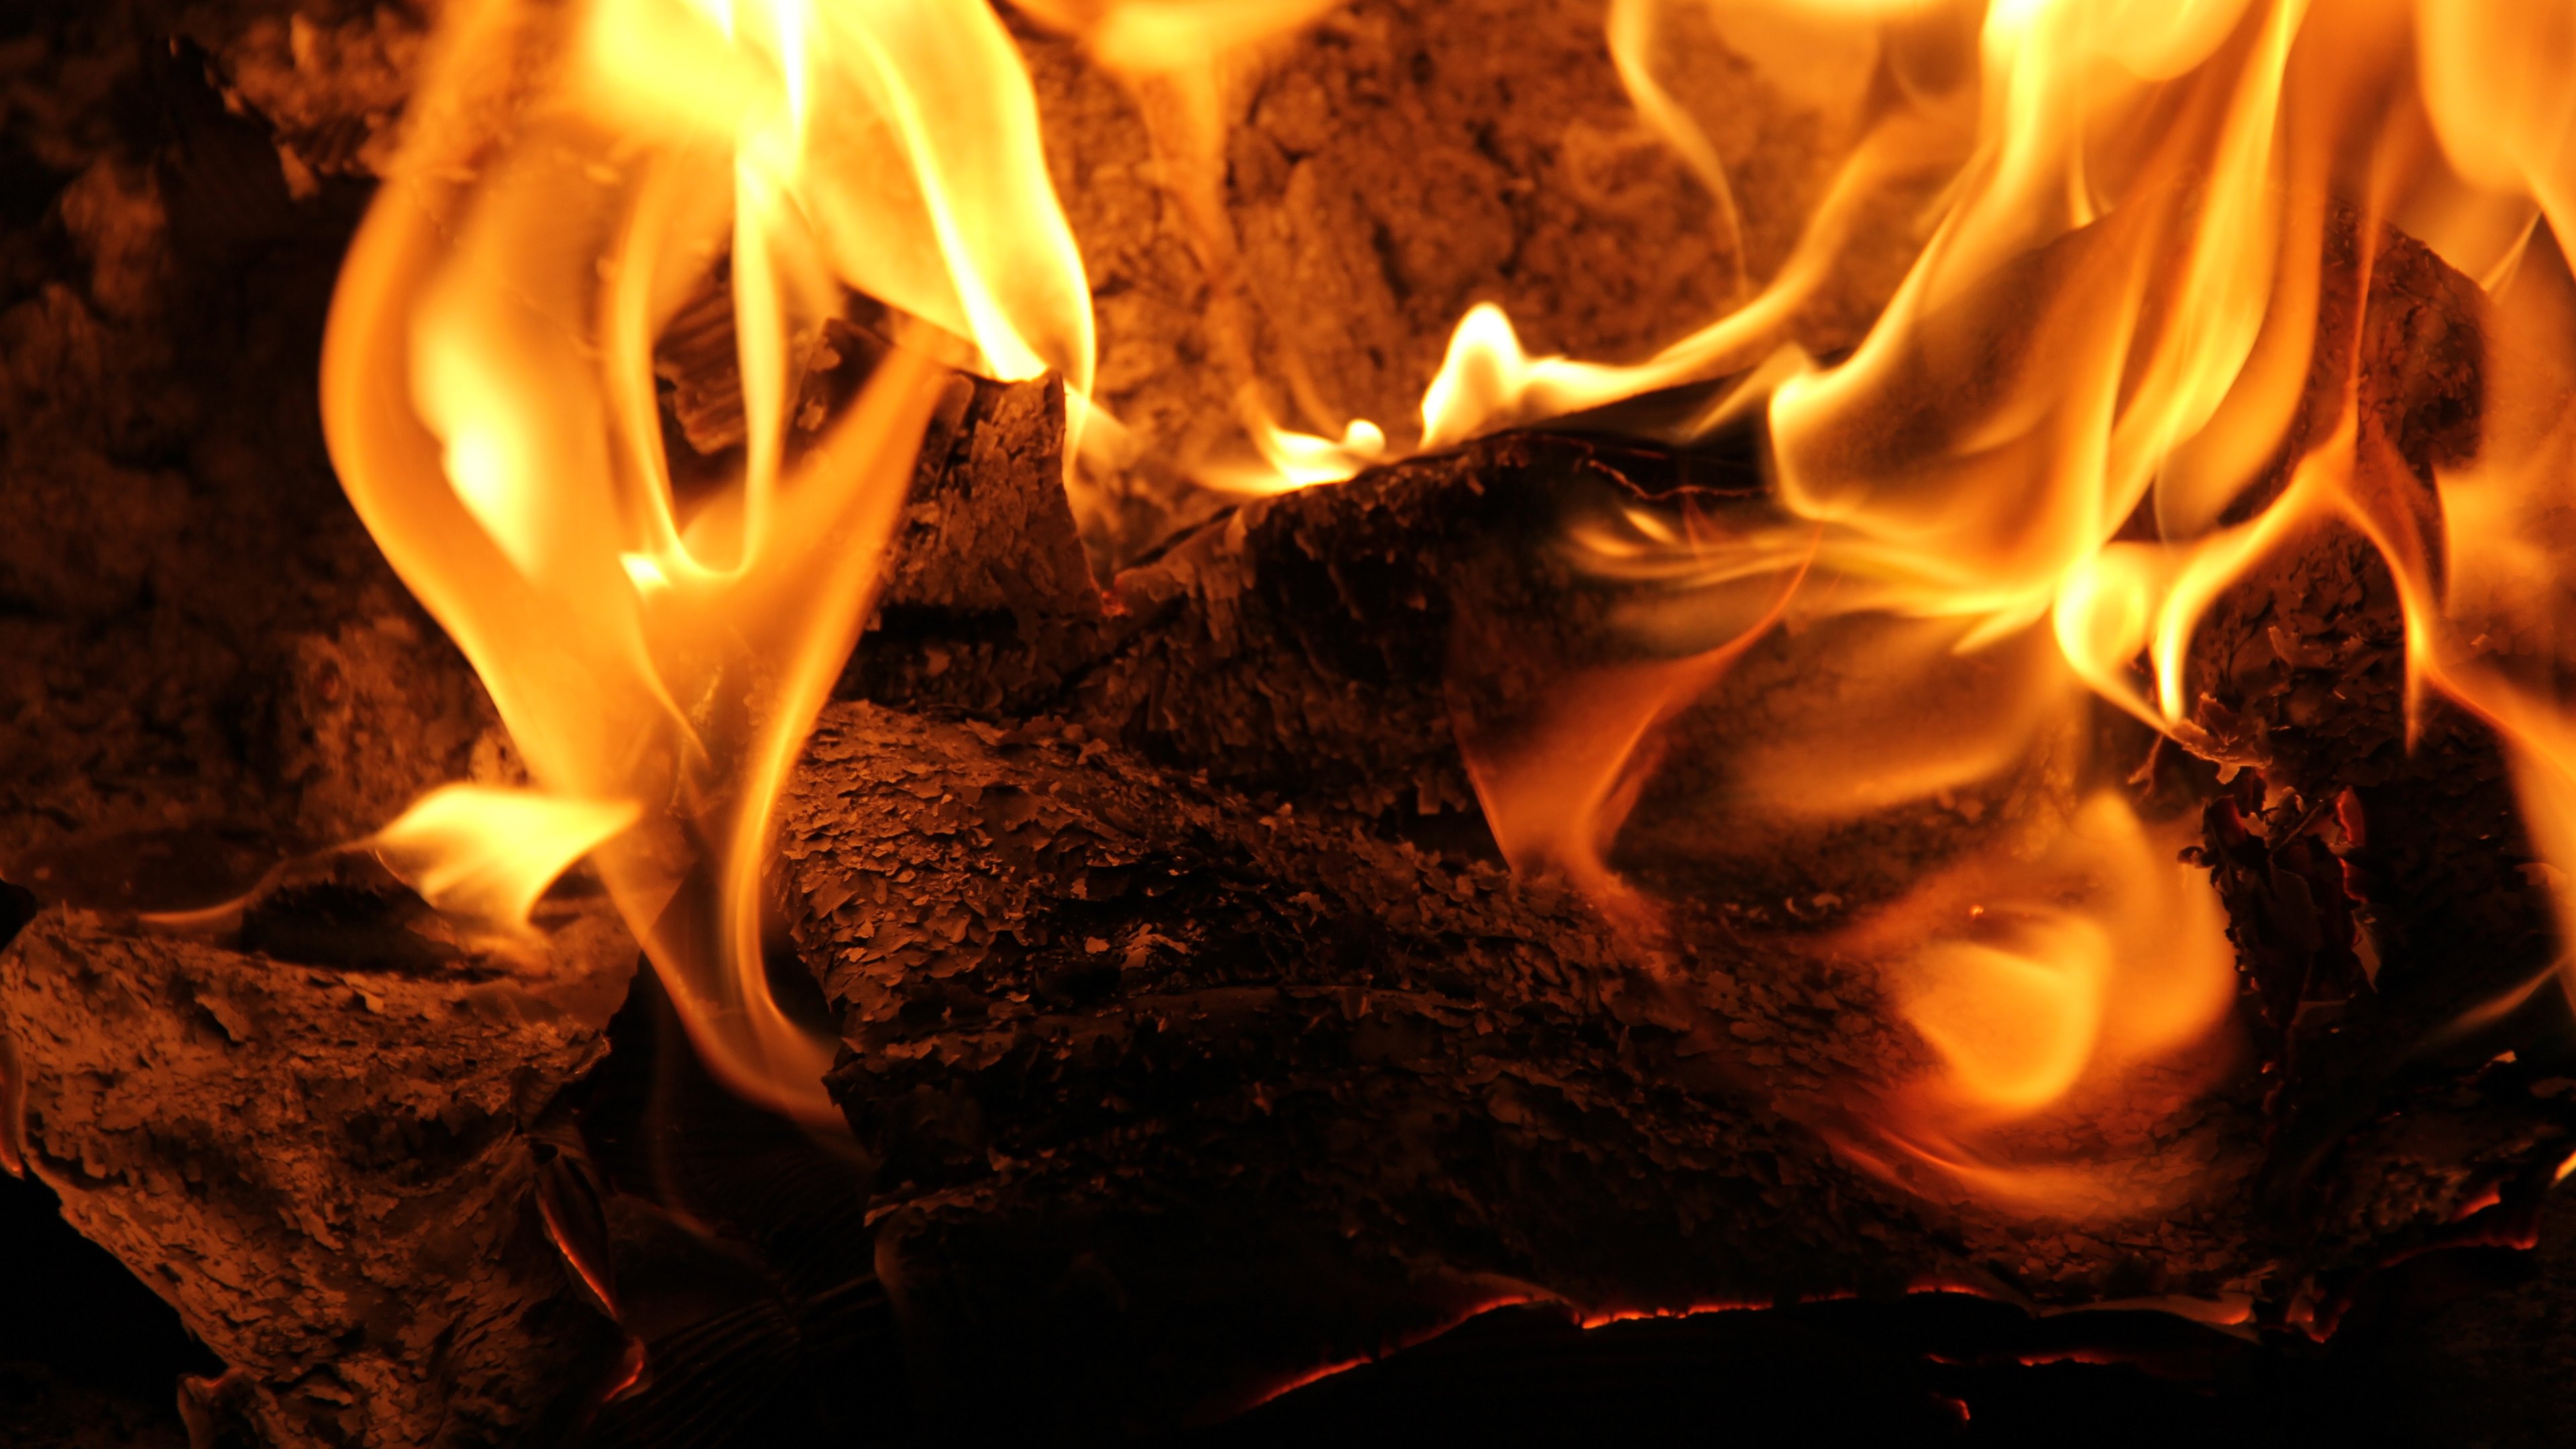 fire wallpaper,fire,flame,heat,bonfire,campfire